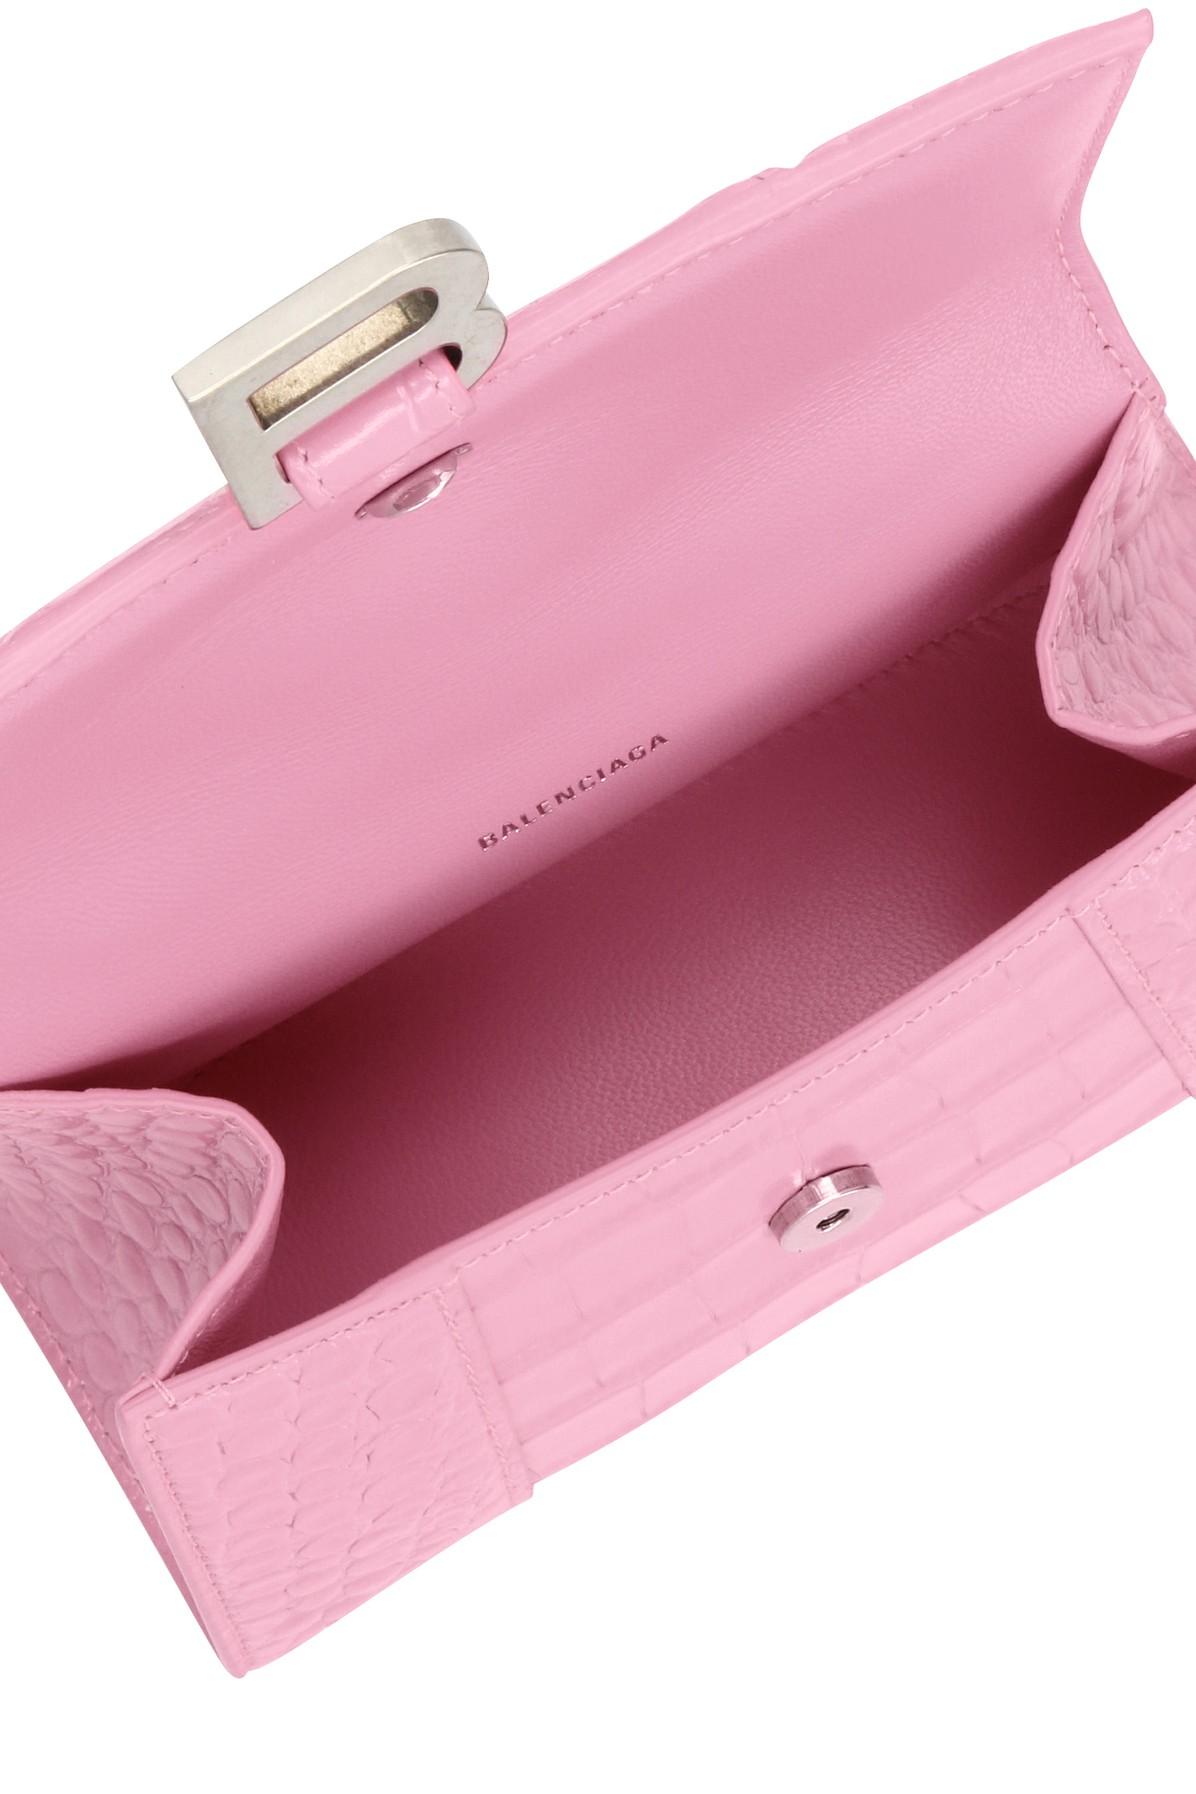 Balenciaga Sweet Pink Metallic Coated Canvas Hourglass Xs Top Handle Bag